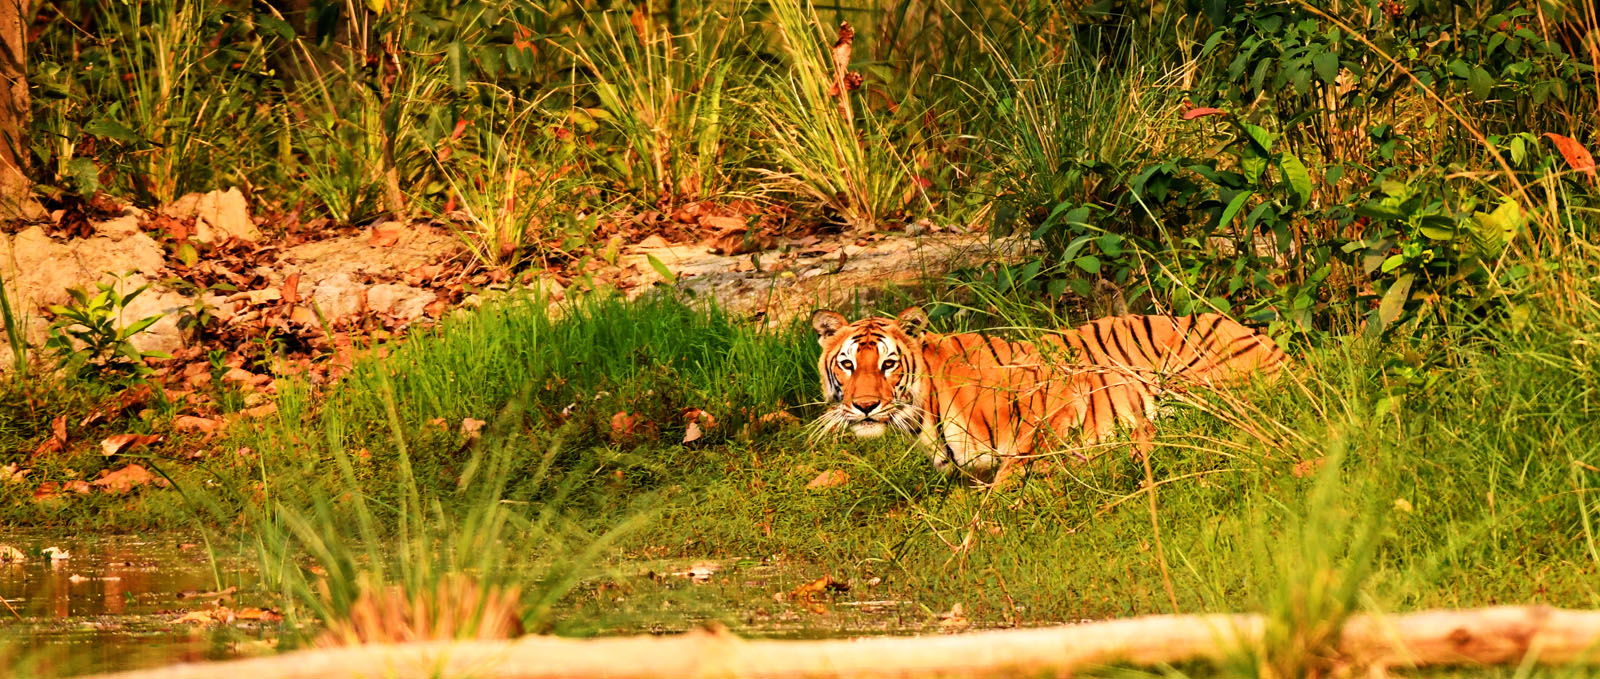 Tiger at Bardiya National Park